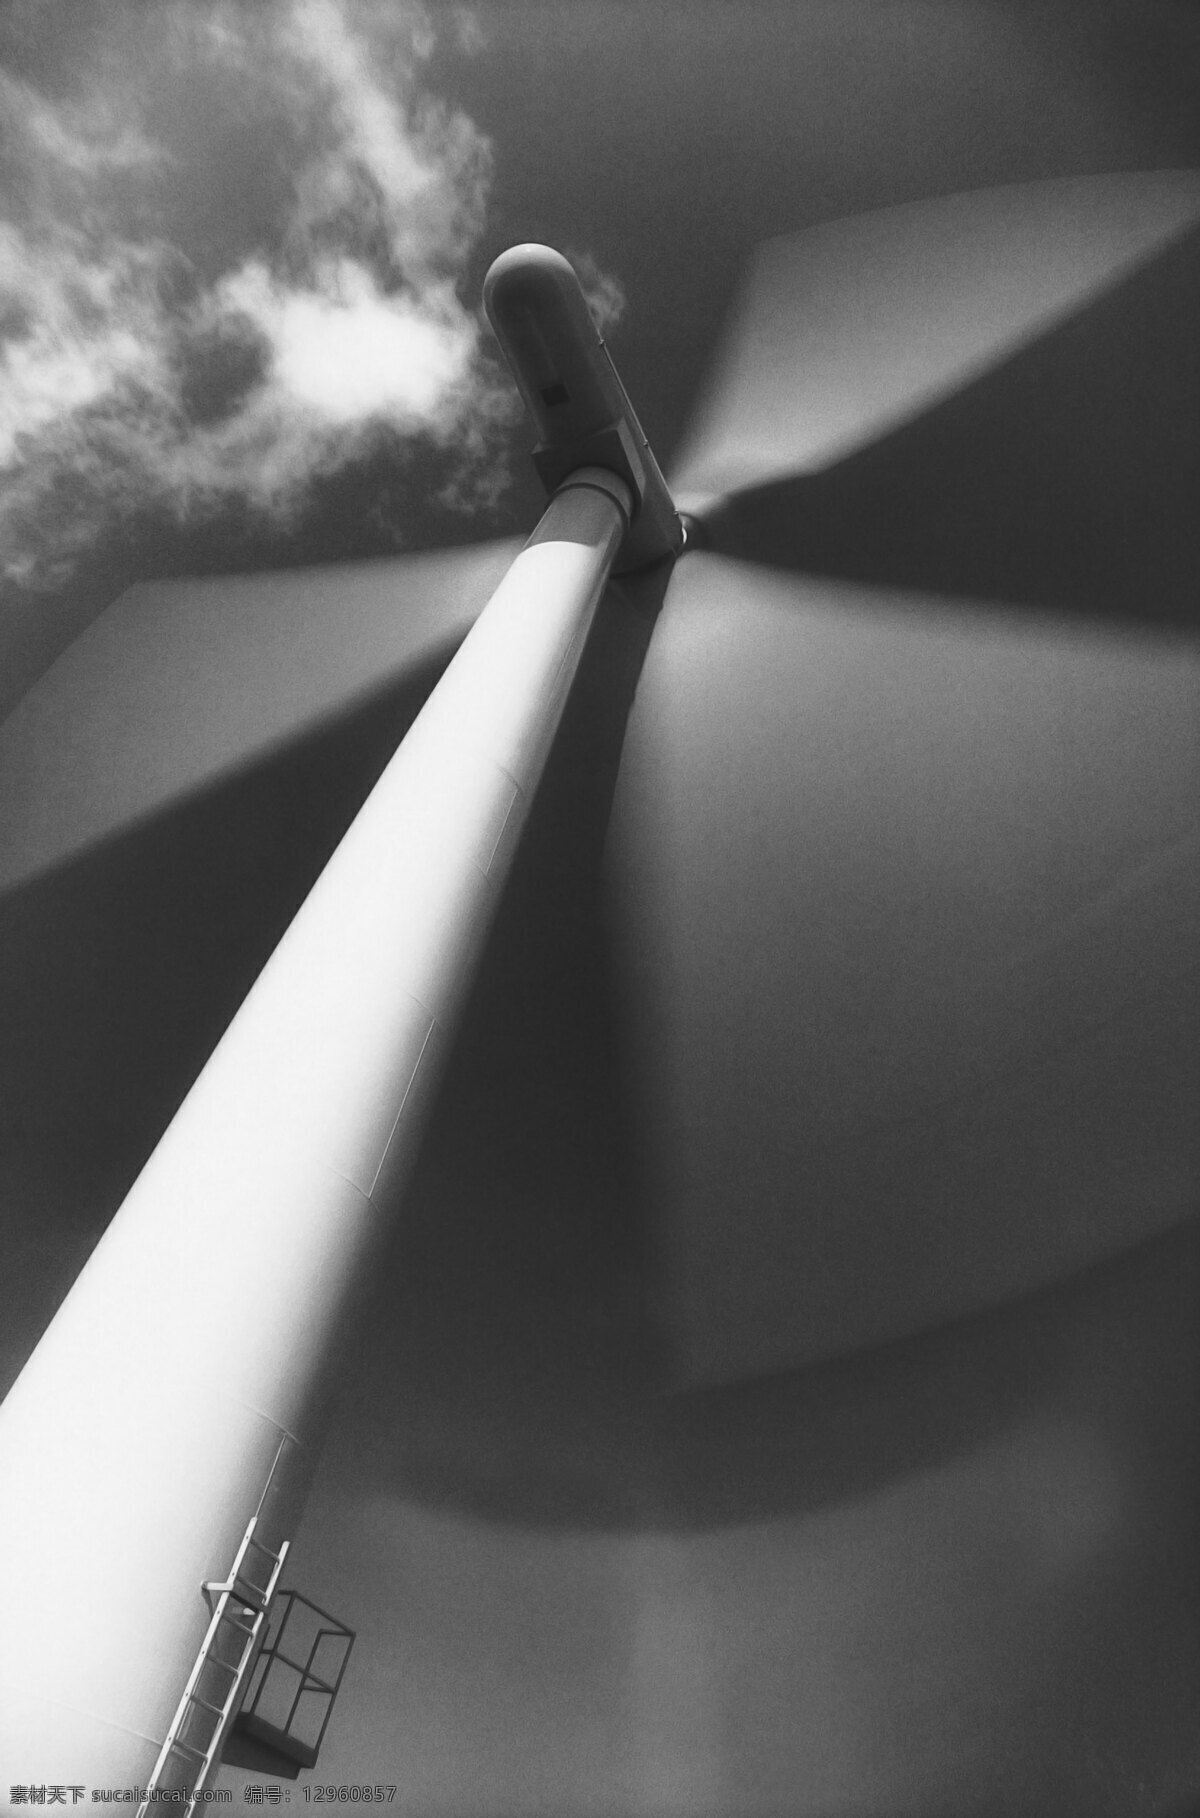 低碳 电机 电力 风电 风力发电 风能 工业生产 节能 风力 发电 能源 资源 清洁能源 家庭用电 电能 天空 设备 旋转 转动 现代科技 海报 环保公益海报